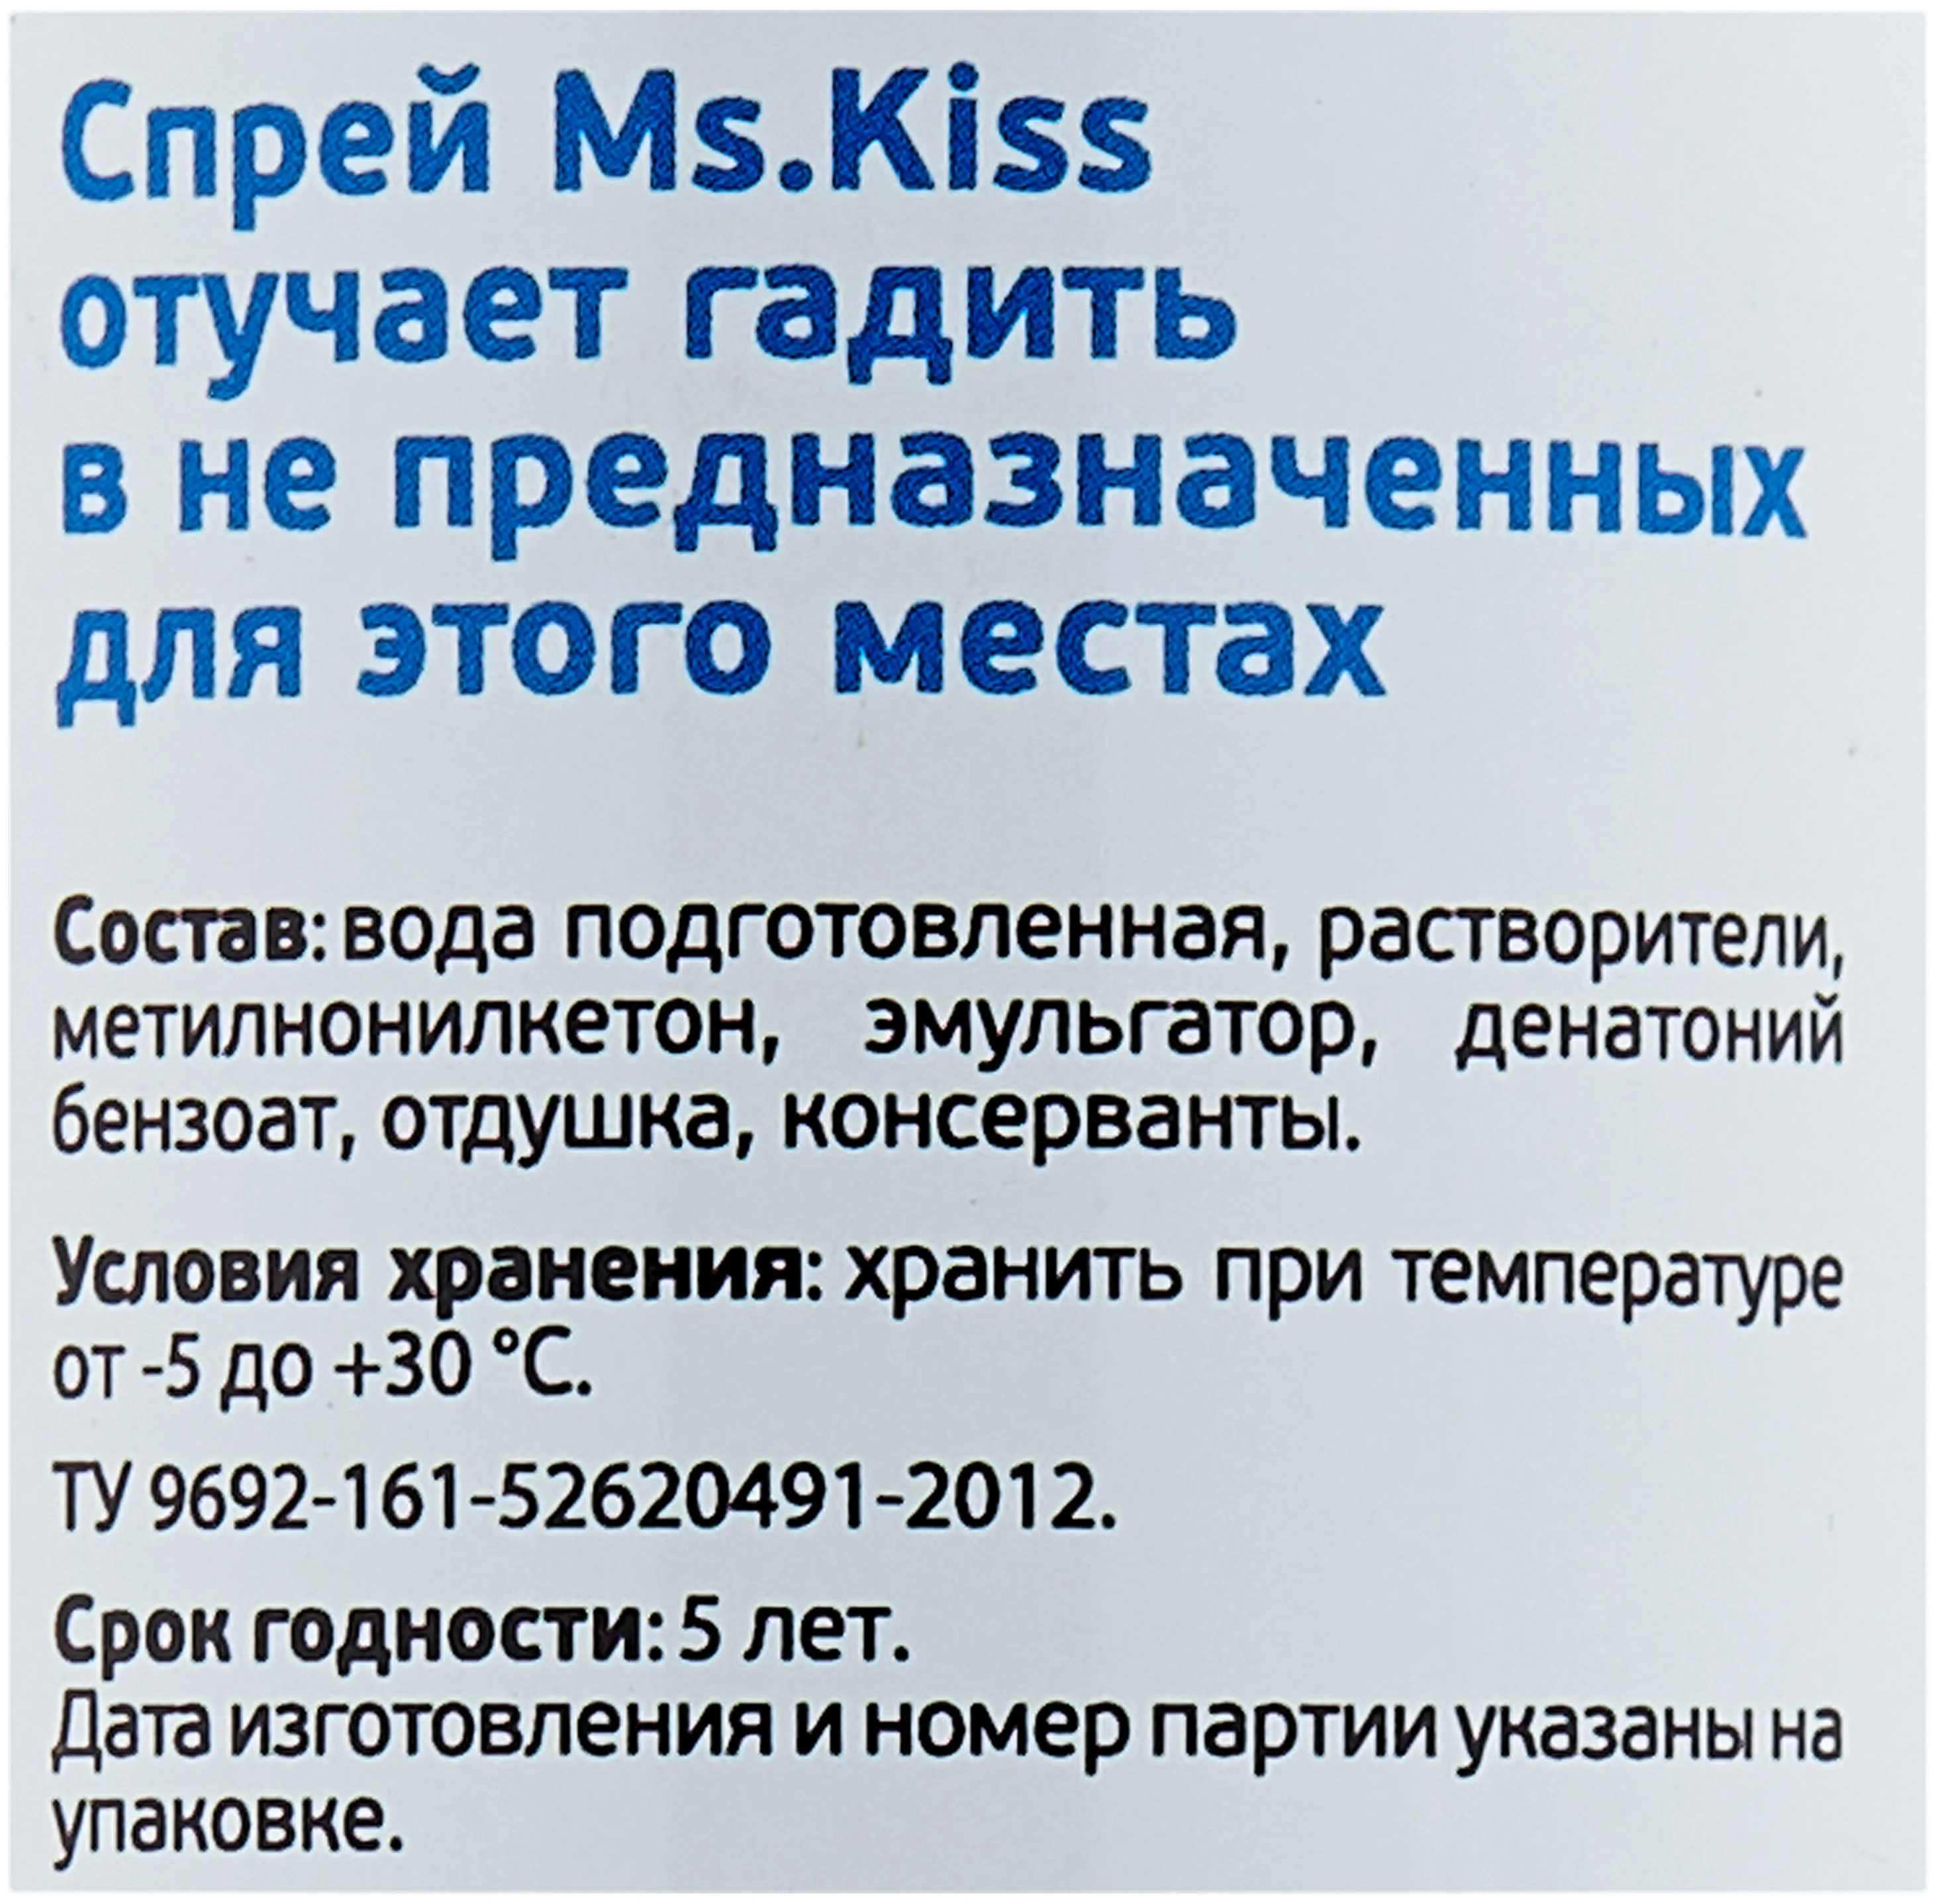 Ms.Kiss "Отучает гадить" - для приучения к лотку, отпугивающий